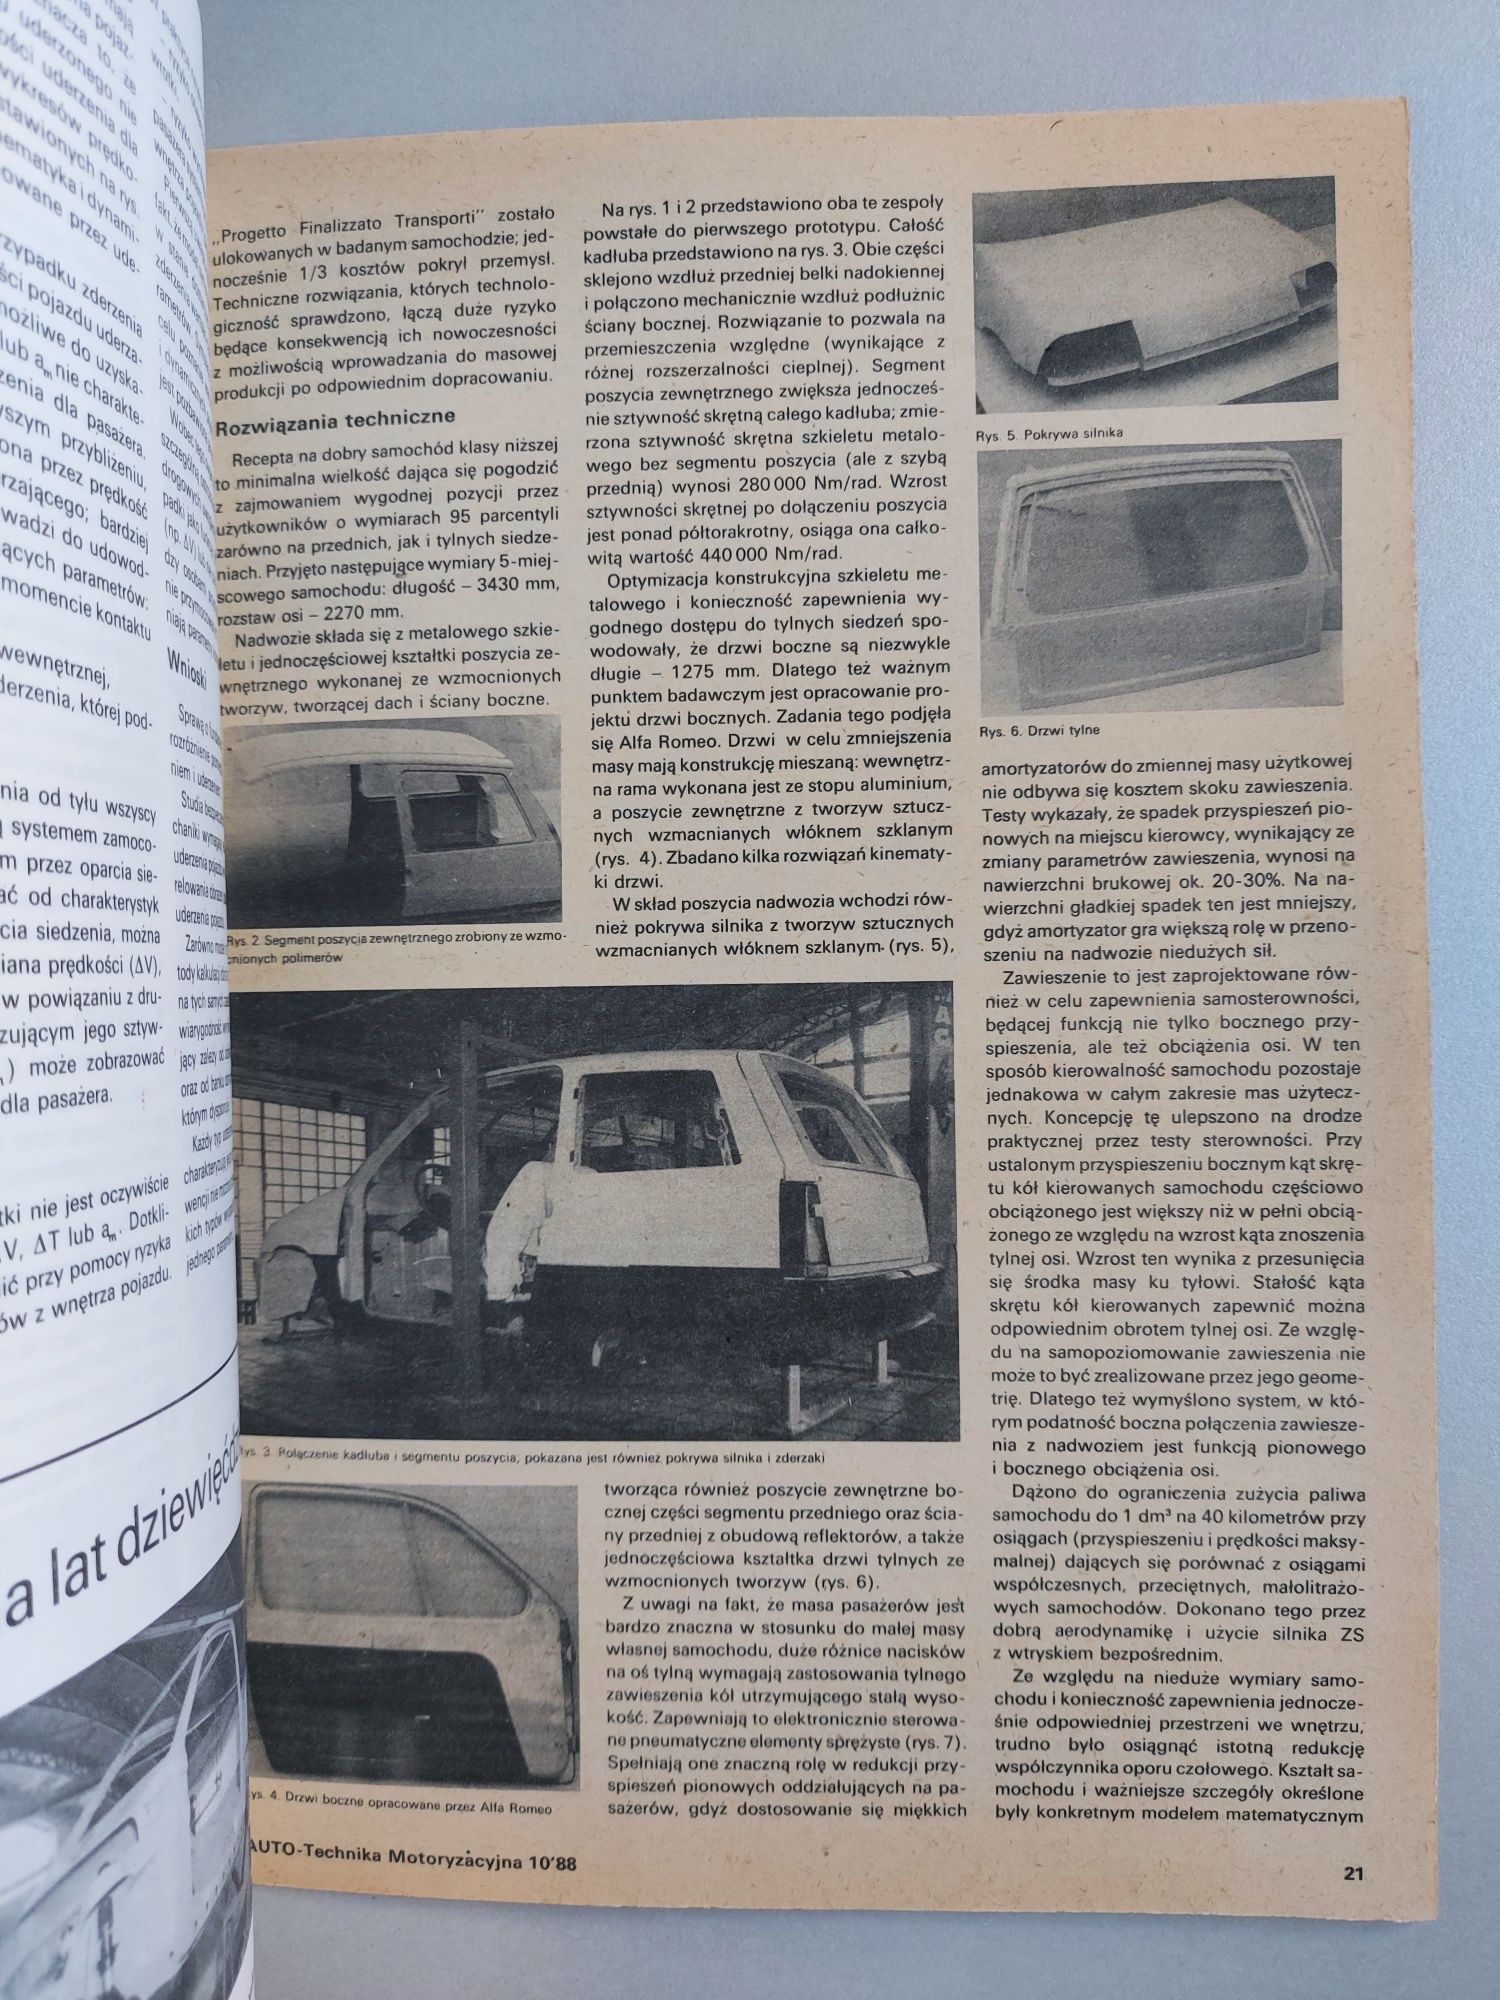 Auto technika motoryzacyjna - Czasopismo z 1988 roku